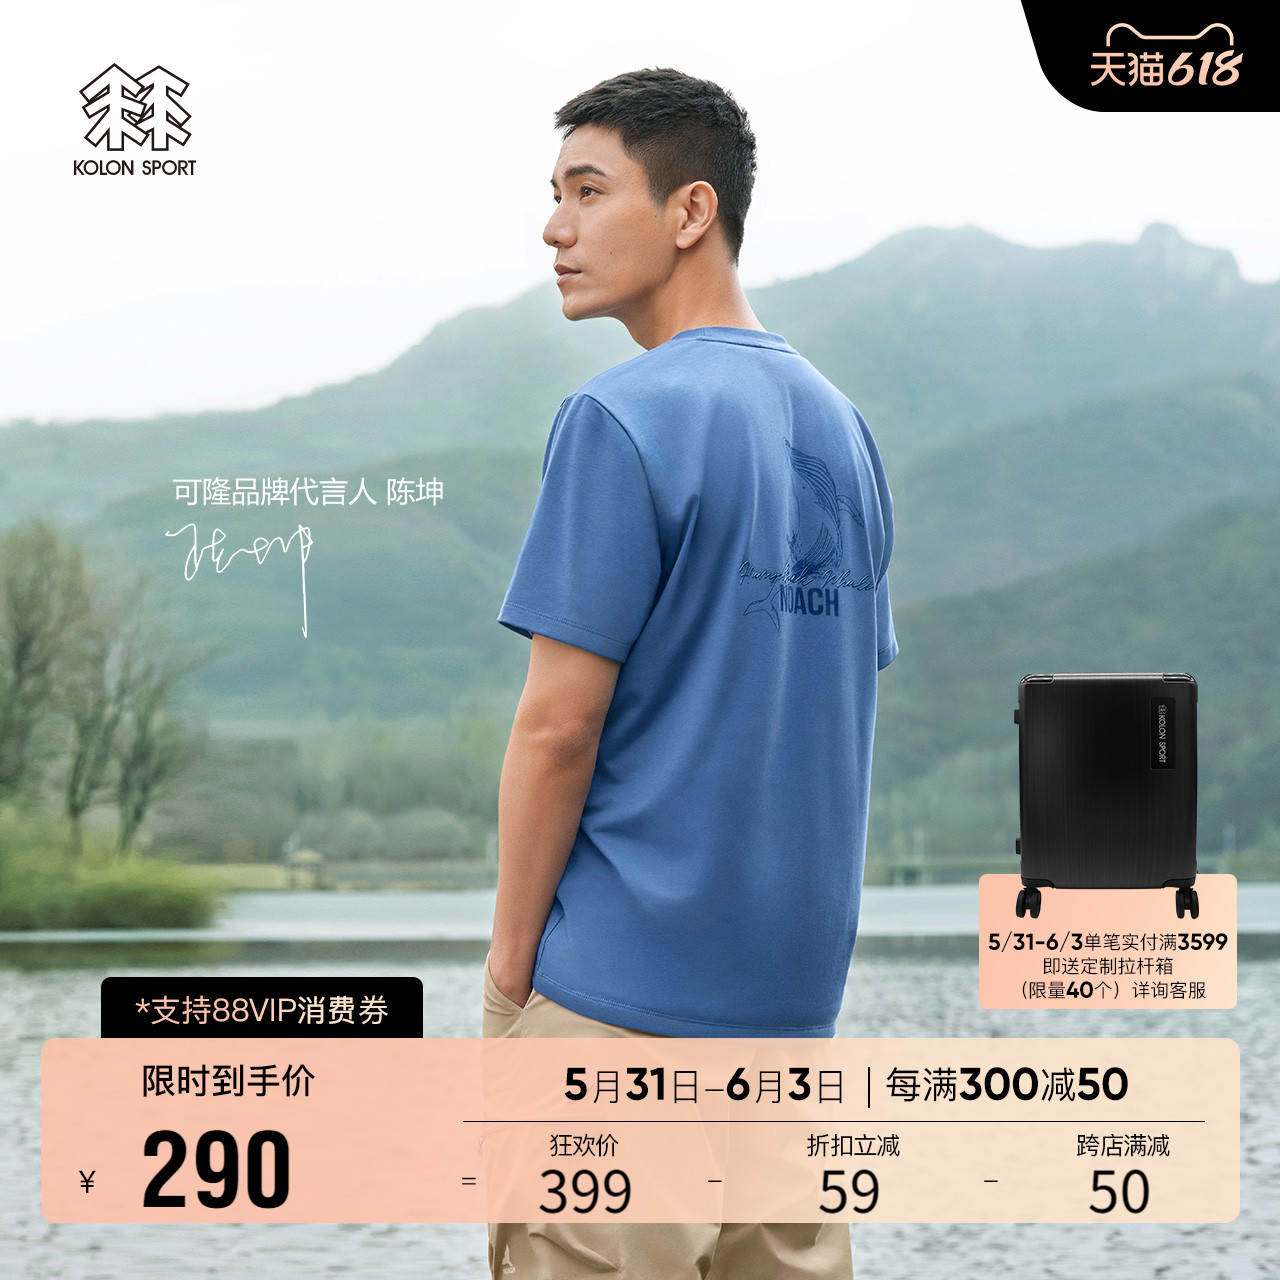 (Same as Chen Kun) KOLONSPORT KOLON T-shirt quick-drying men's outdoor short-sleeved camperie shirt NOACH